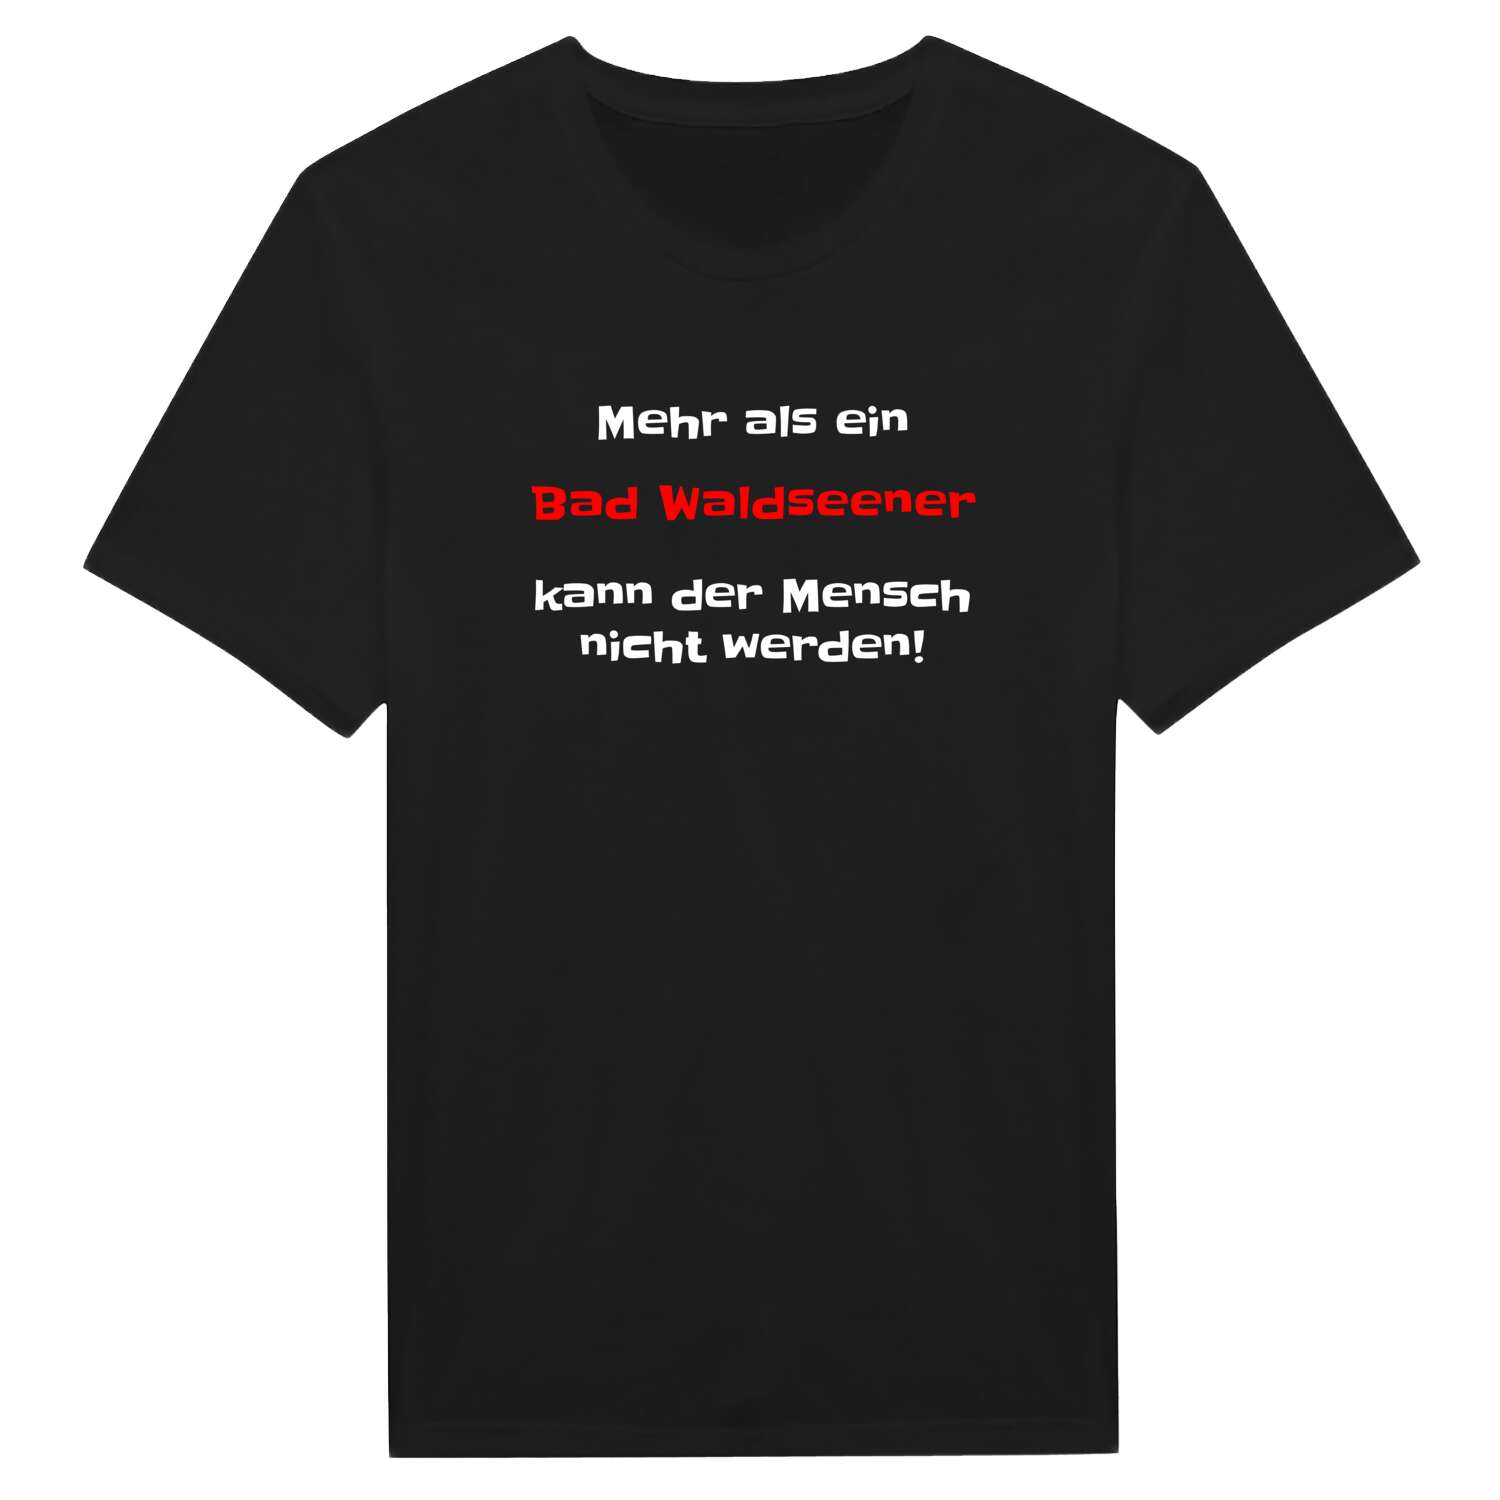 Bad Waldsee T-Shirt »Mehr als ein«